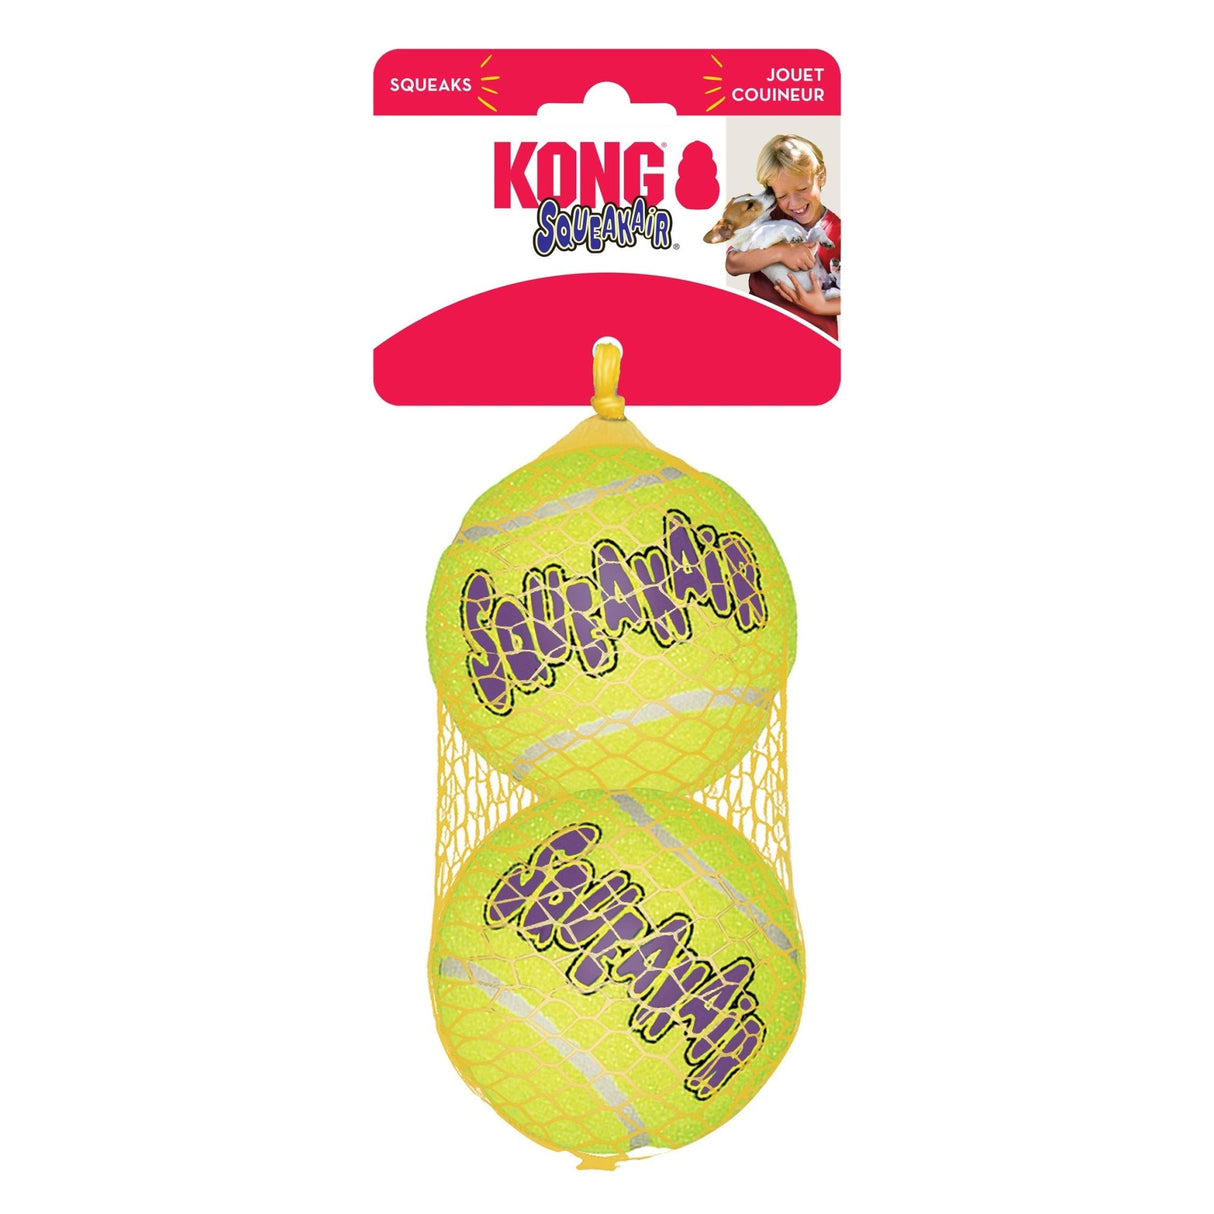 KONG Squeak Air Tennis Balls 3-Pack Dog Toy, Kong, Large